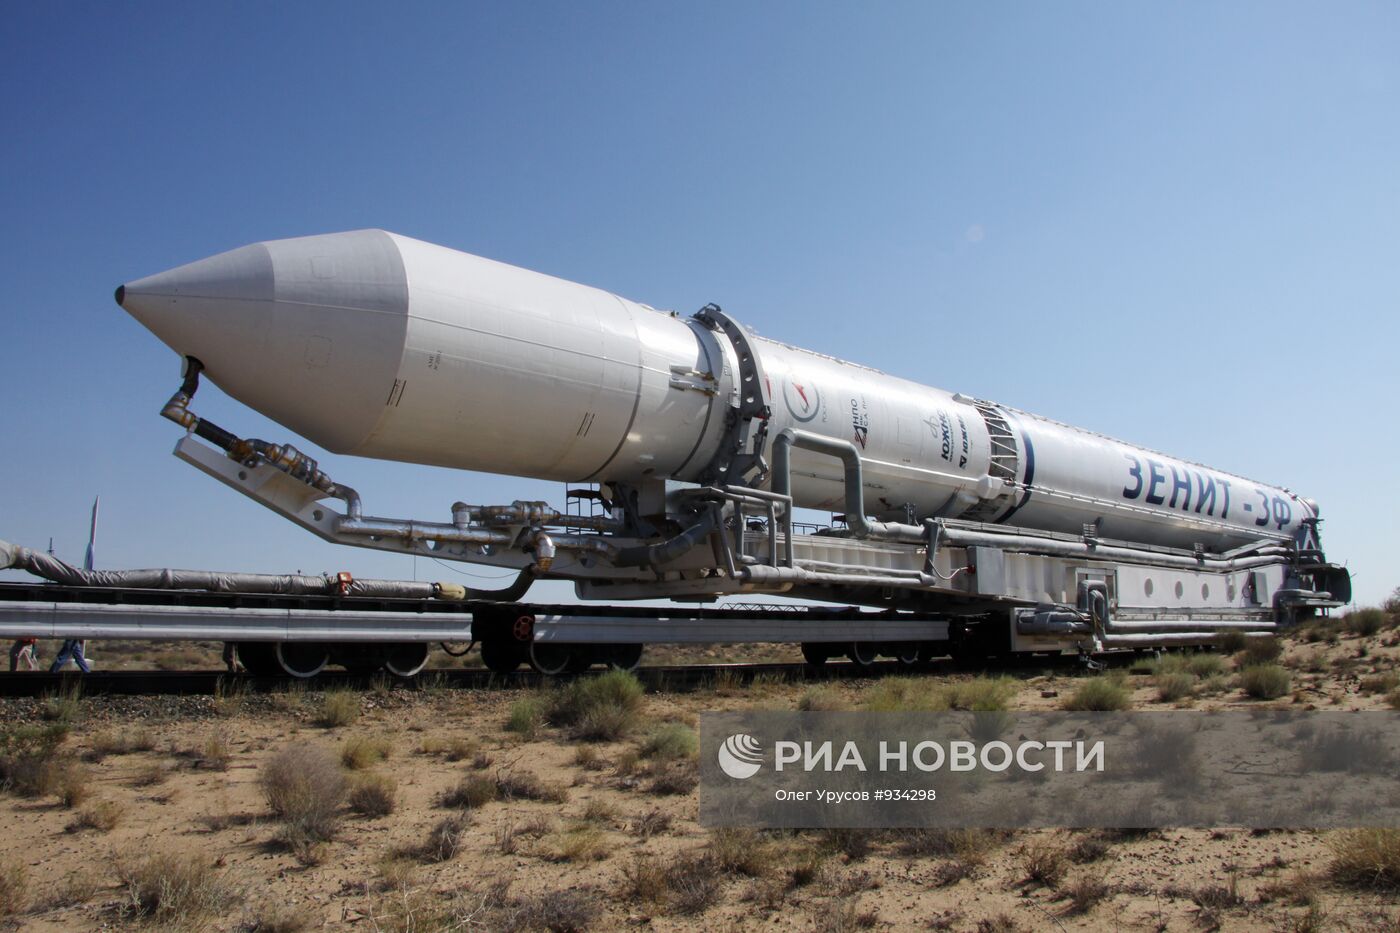 Вывоз ракеты космического назначения "Зенит-3М"